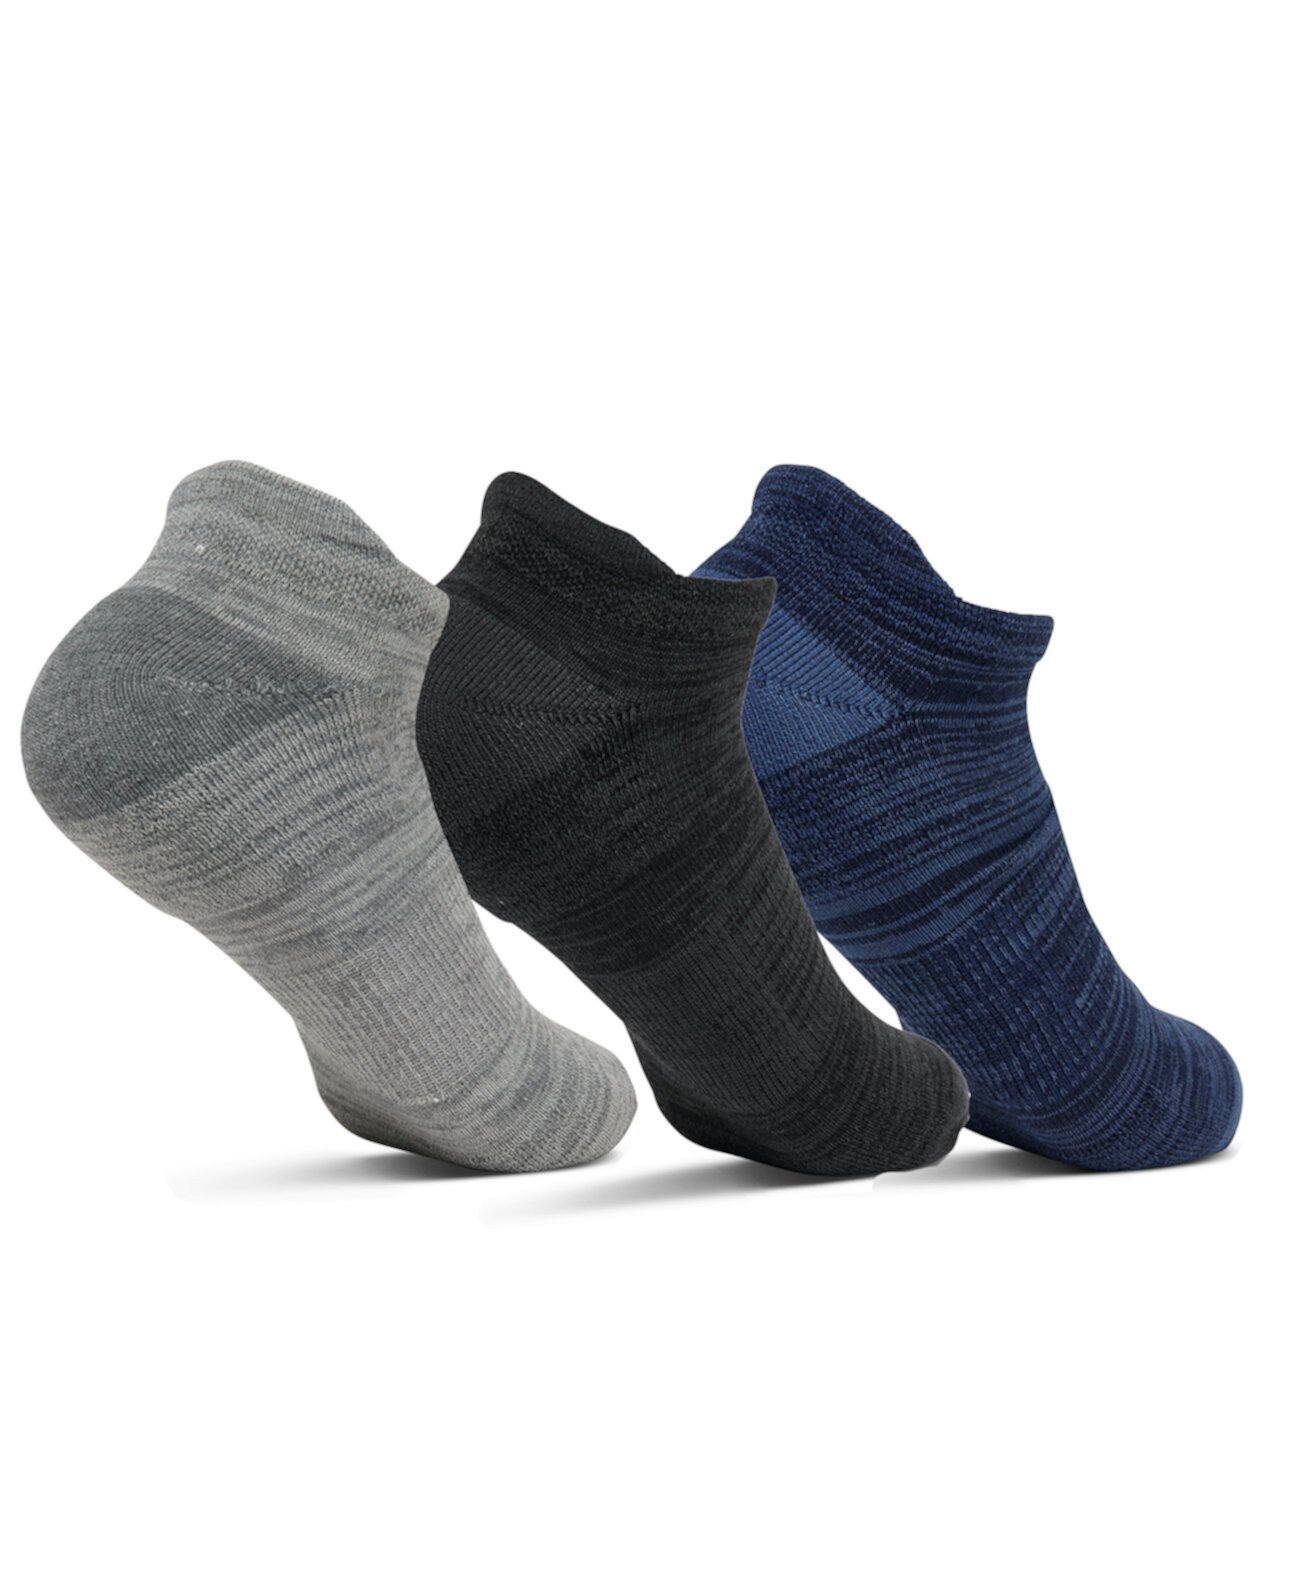 Комплект из трех мужских носков с низким вырезом и язычками от Finish Line Sof Sole